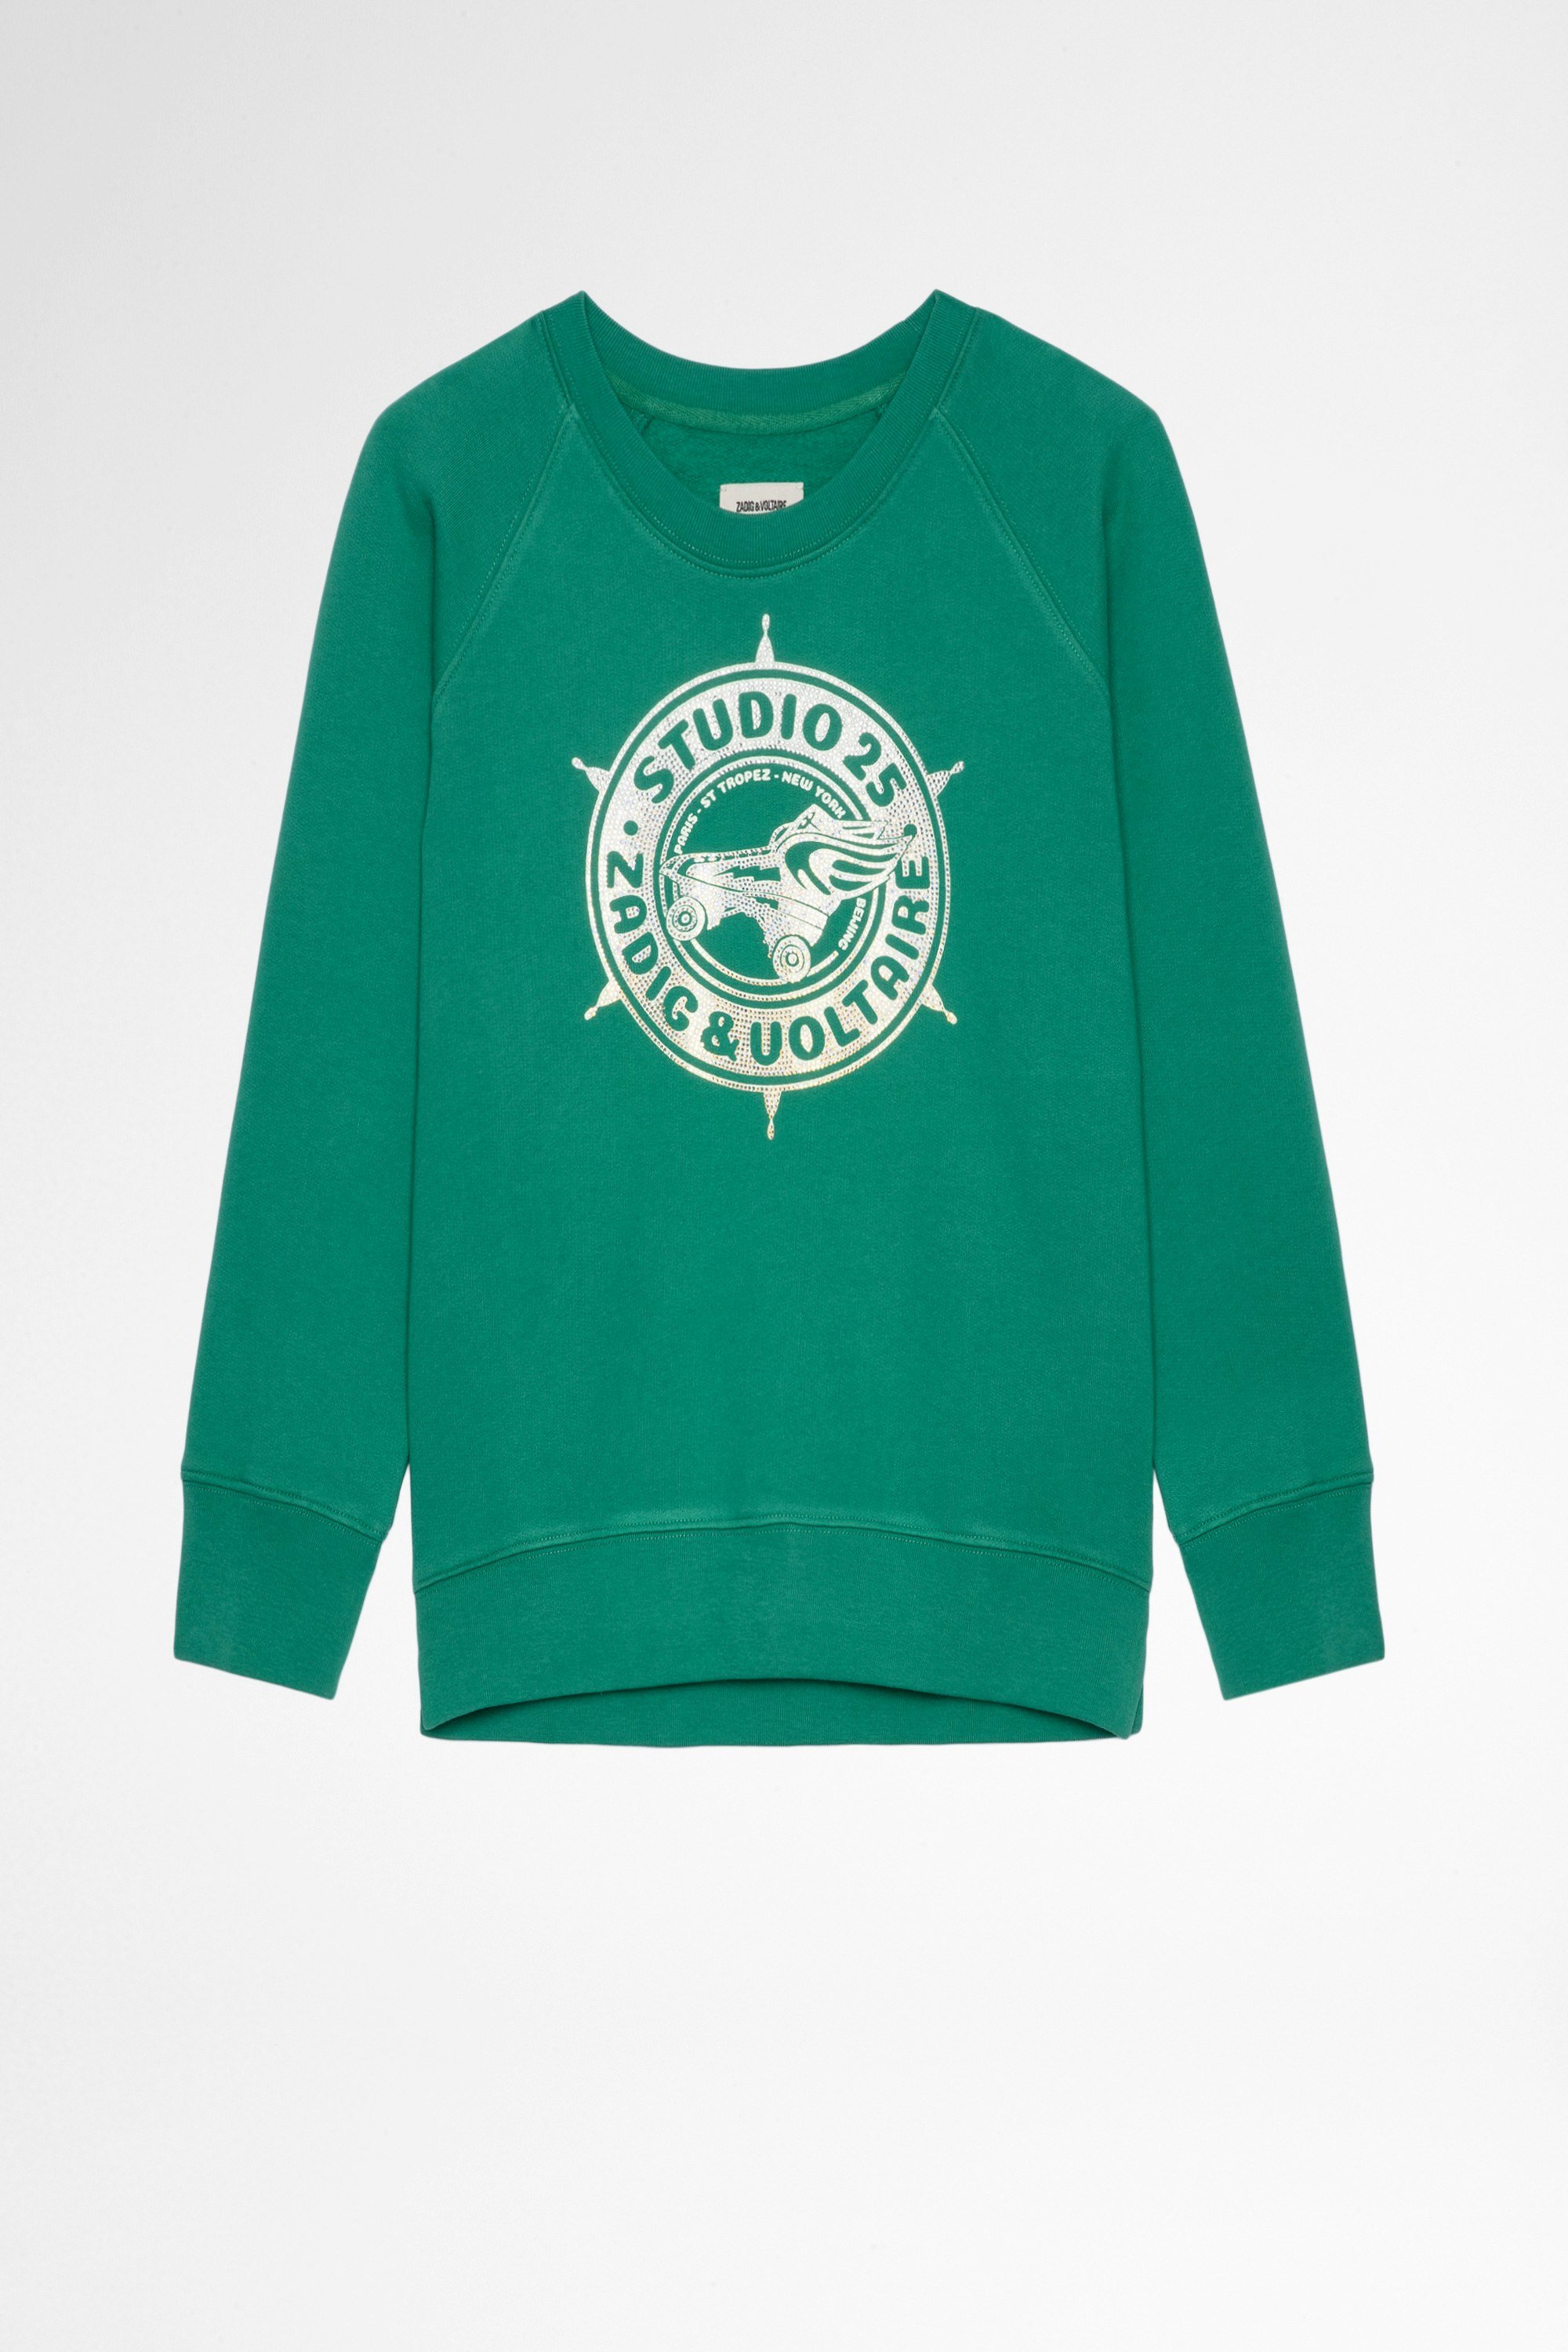 Sweatshirt Cameron Strass Sweatshirt aus grüner Baumwolle mit Studio 25 Print und Kristallen für Damen